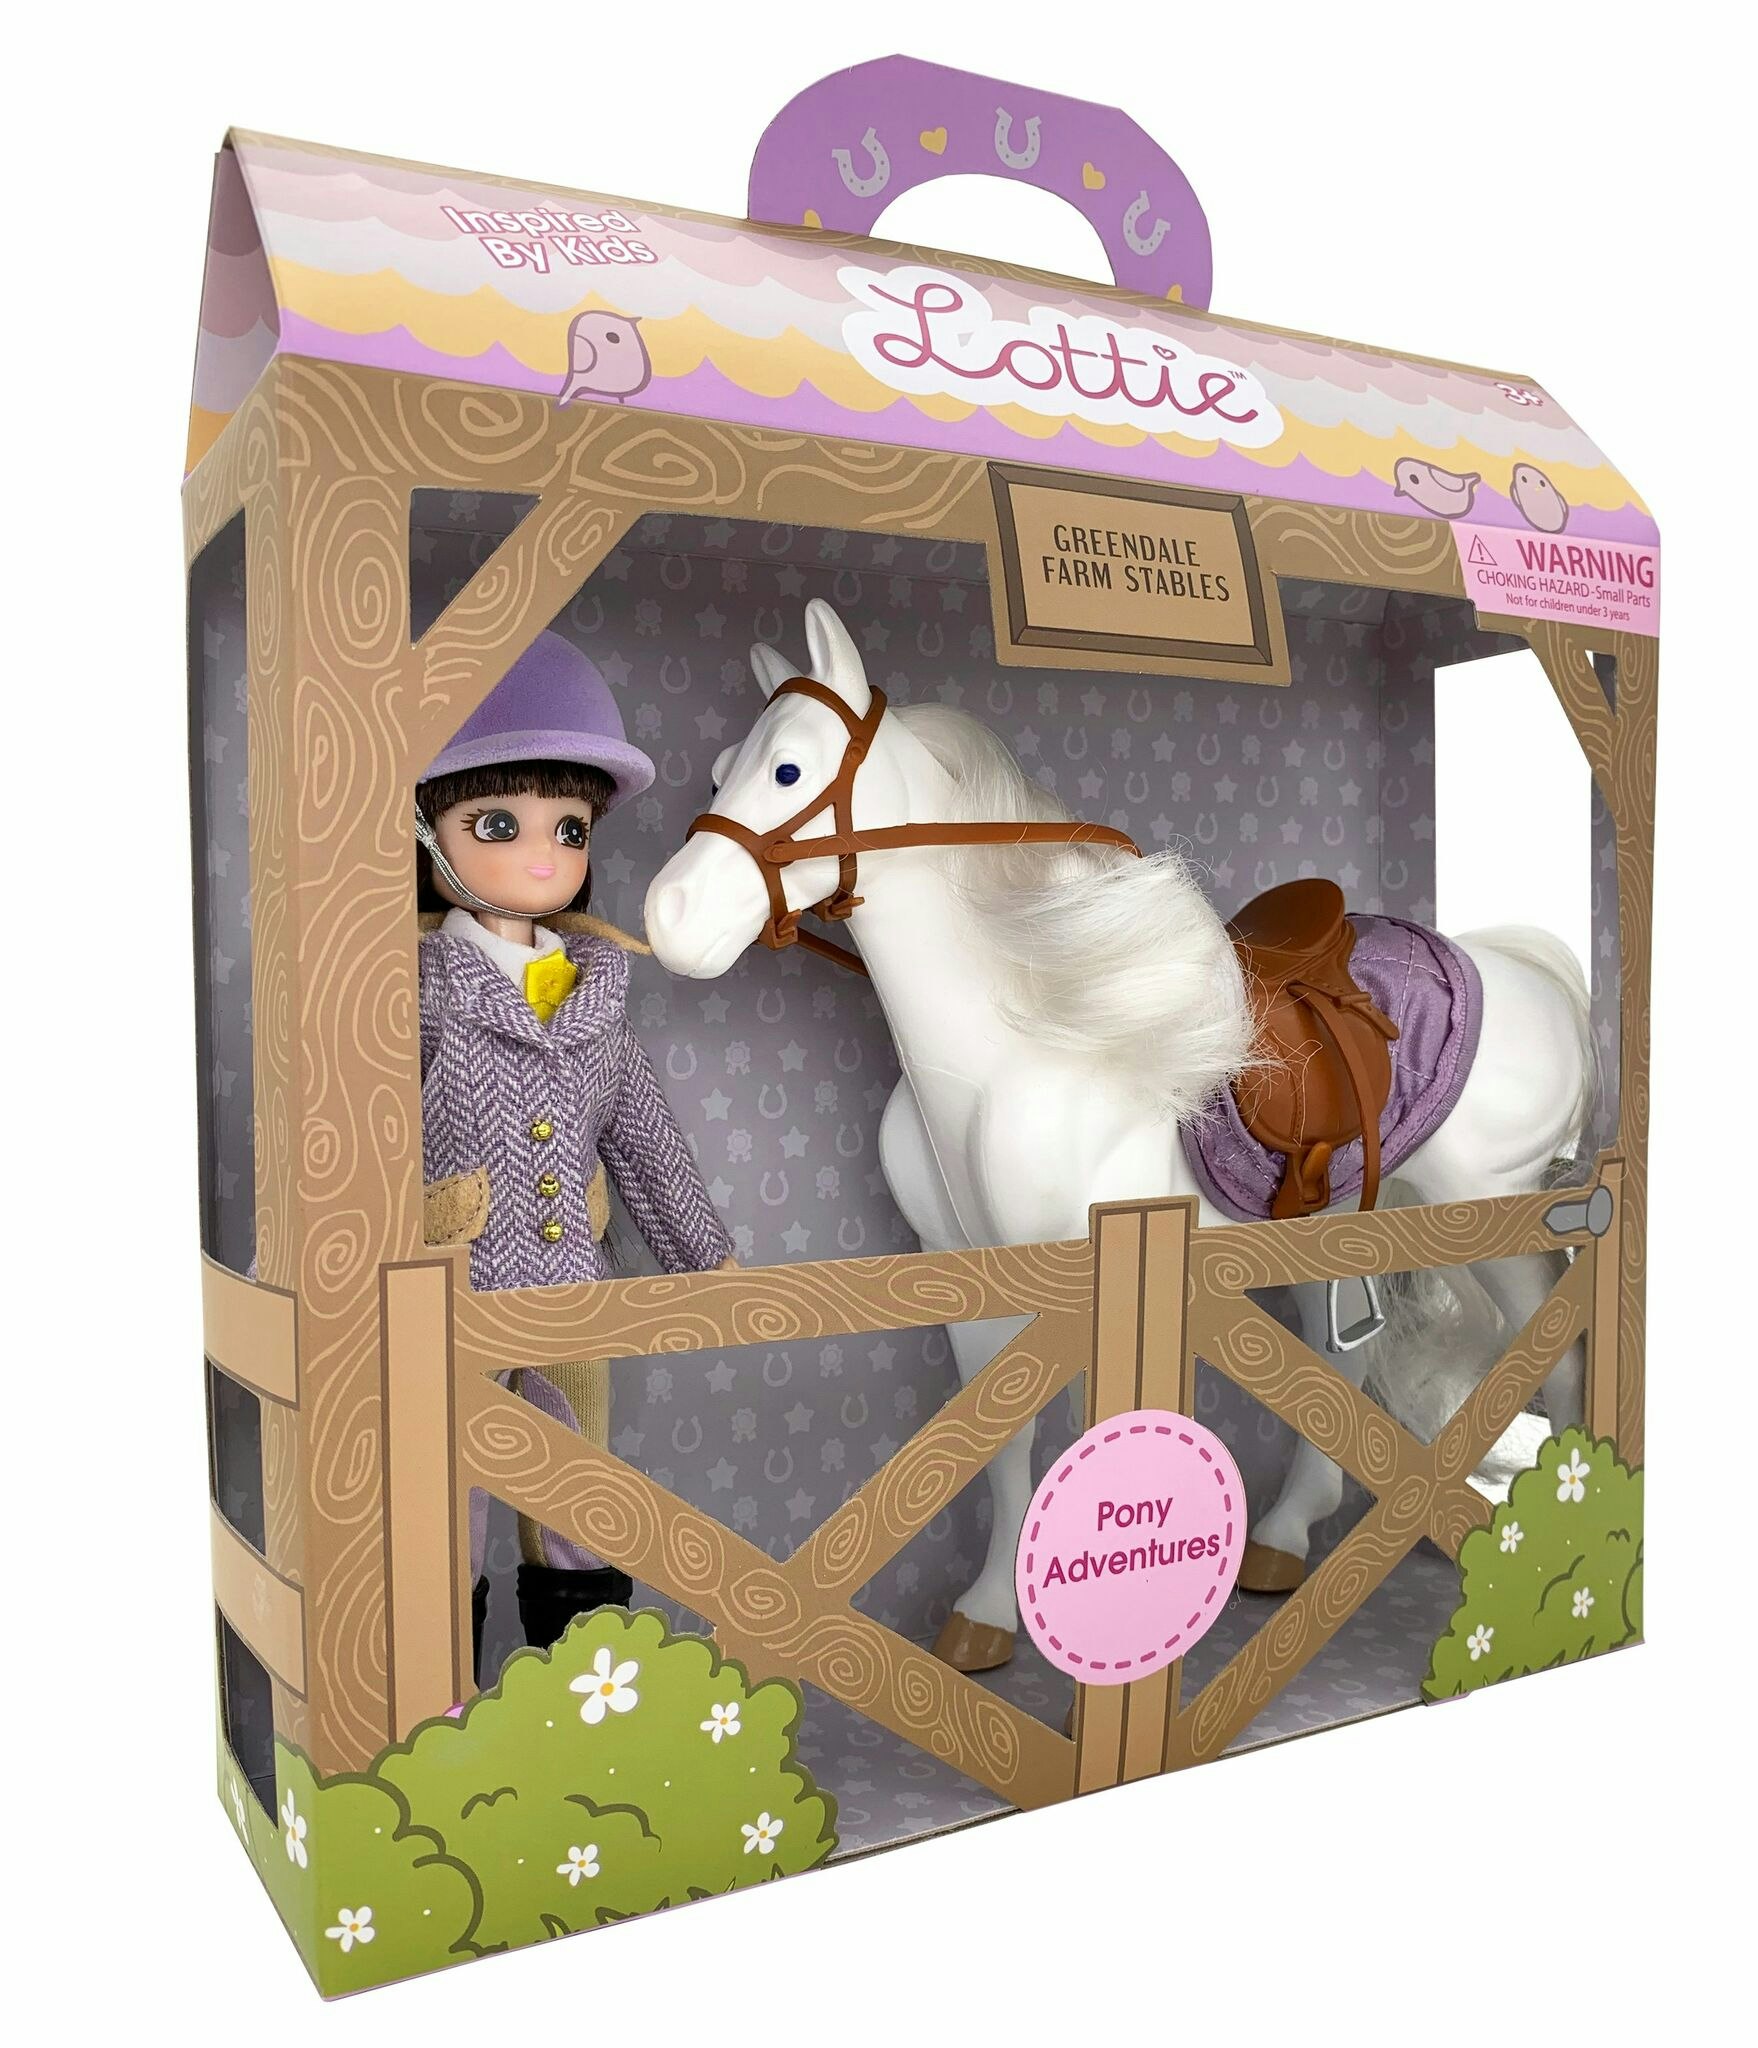 Lottie Pony Adventures Doll & Set